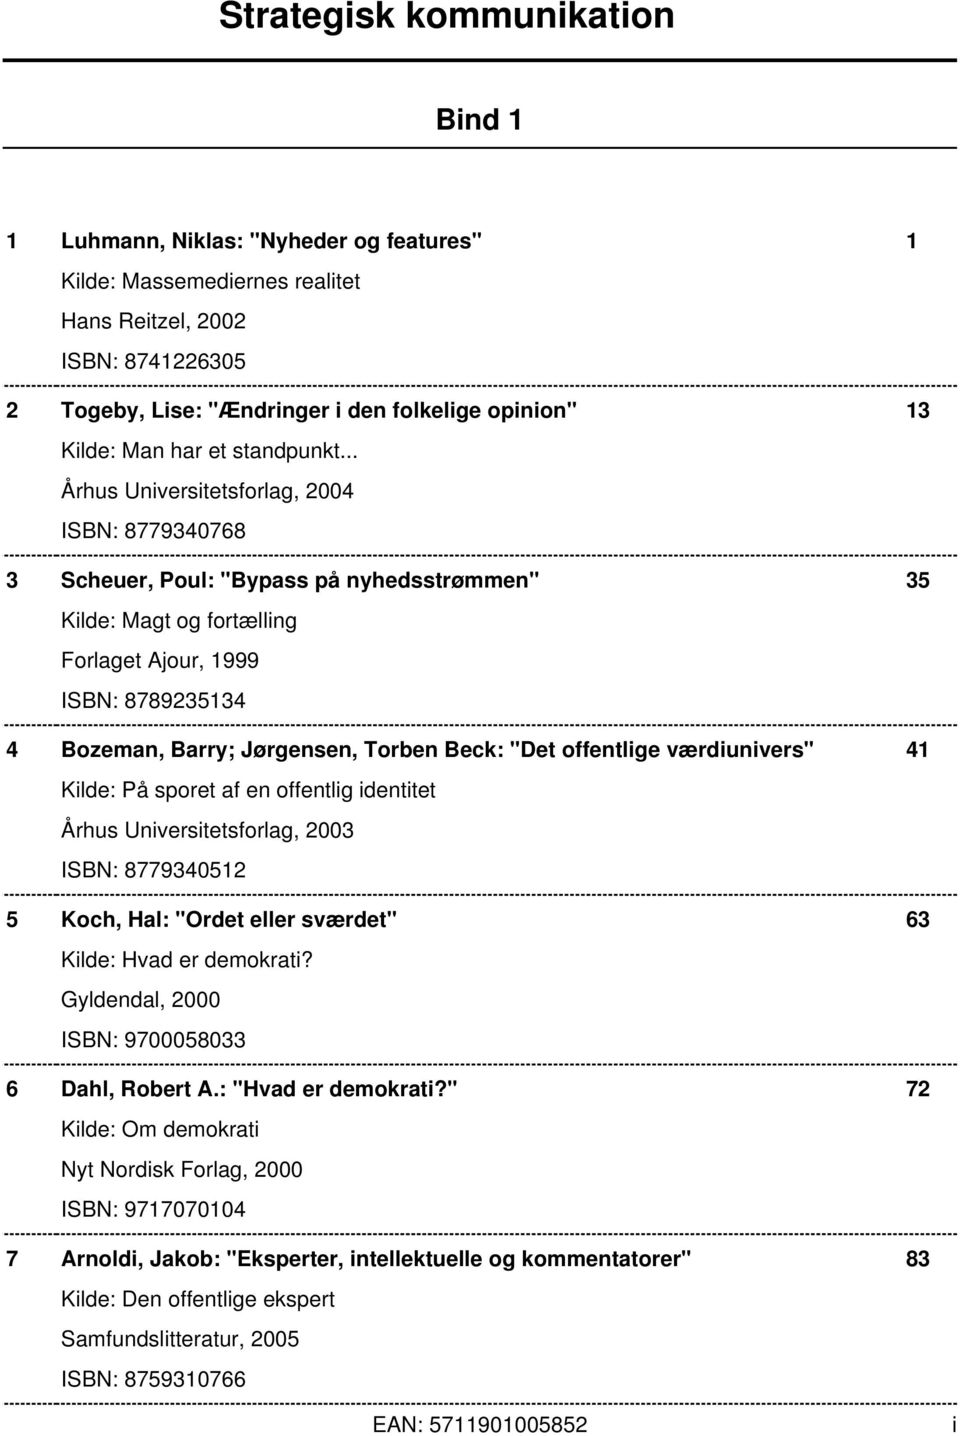 .. Århus Universitetsforlag, 2004 ISBN: 8779340768 3 Scheuer, Poul: "Bypass på nyhedsstrømmen" 35 Kilde: Magt og fortælling Forlaget Ajour, 1999 ISBN: 8789235134 4 Bozeman, Barry; Jørgensen, Torben